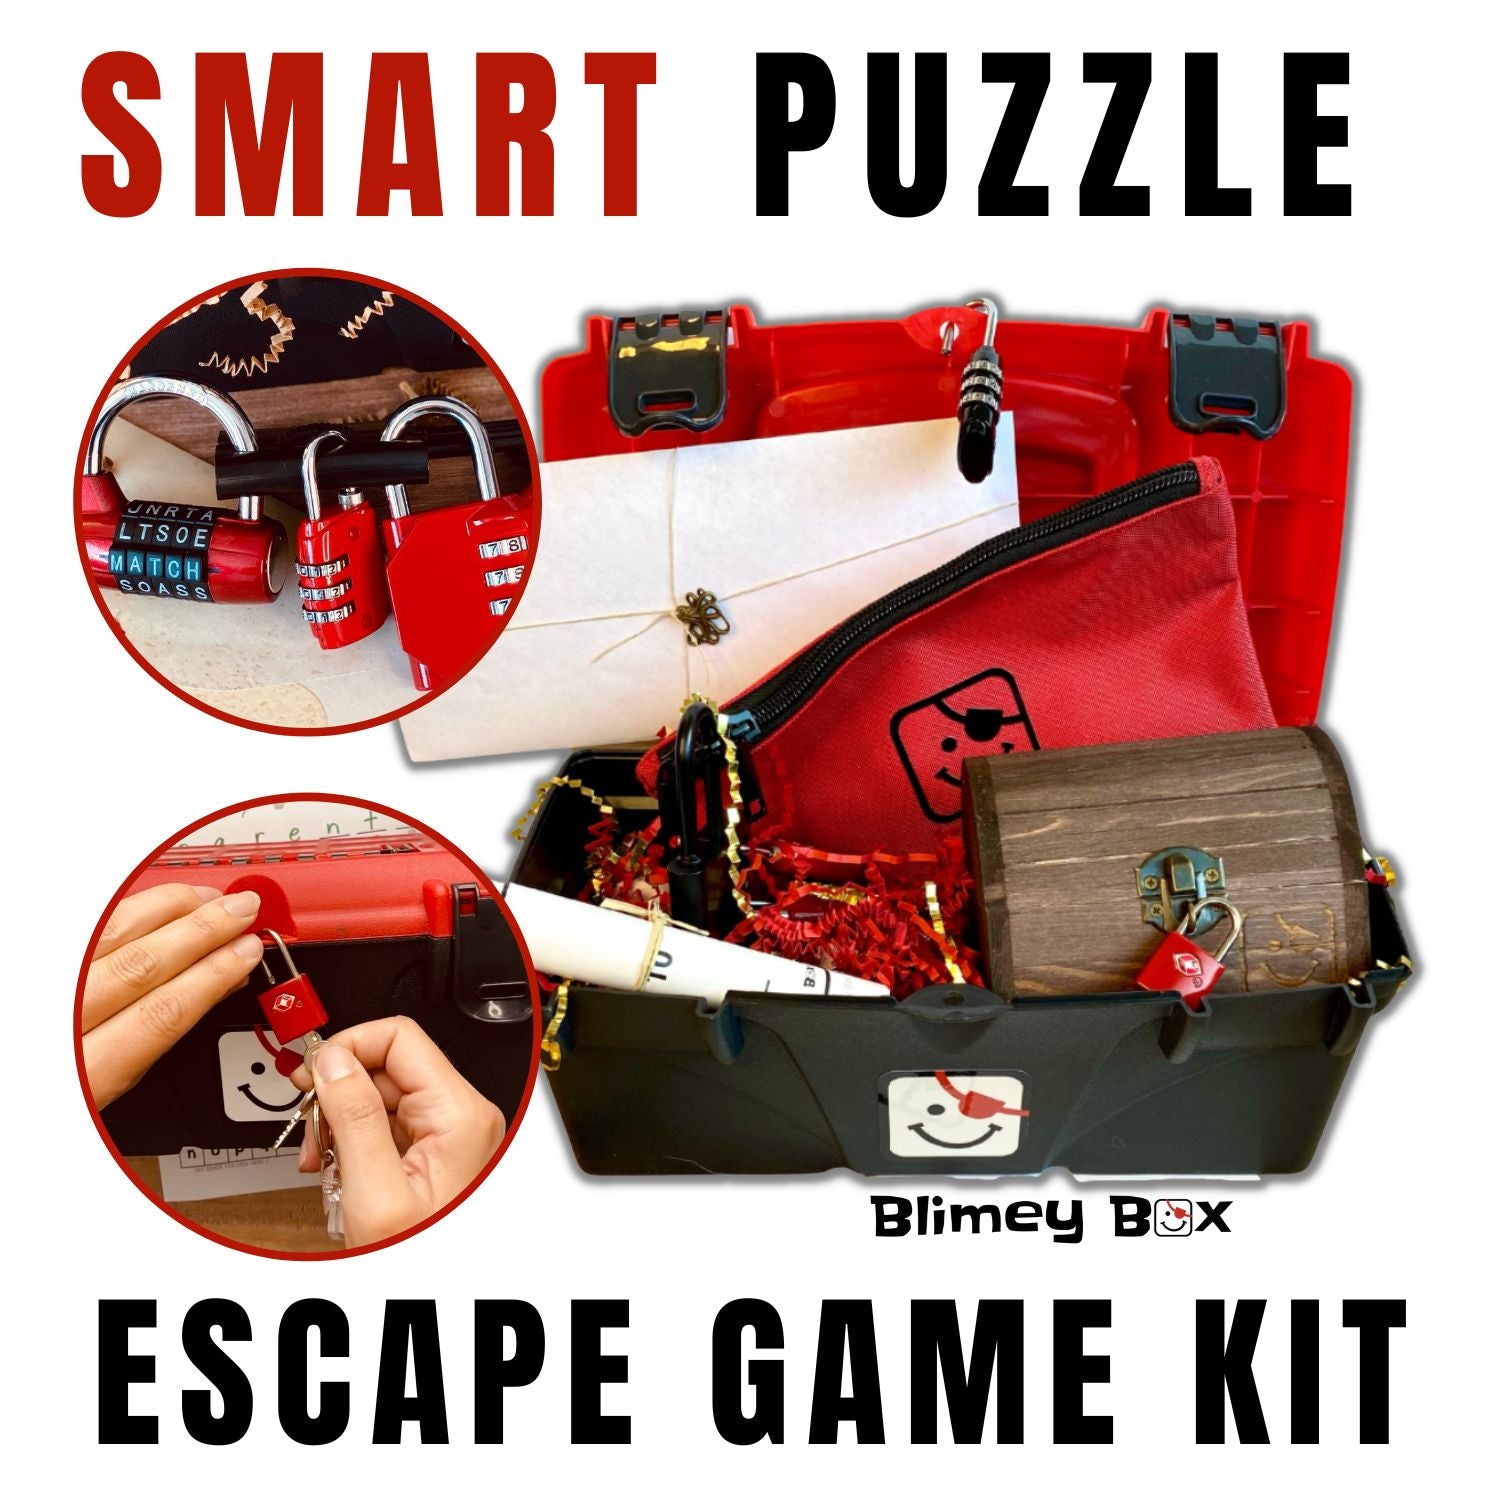 Smart Puzzle Escape Game Kit for ages 5-9 Blimey Box